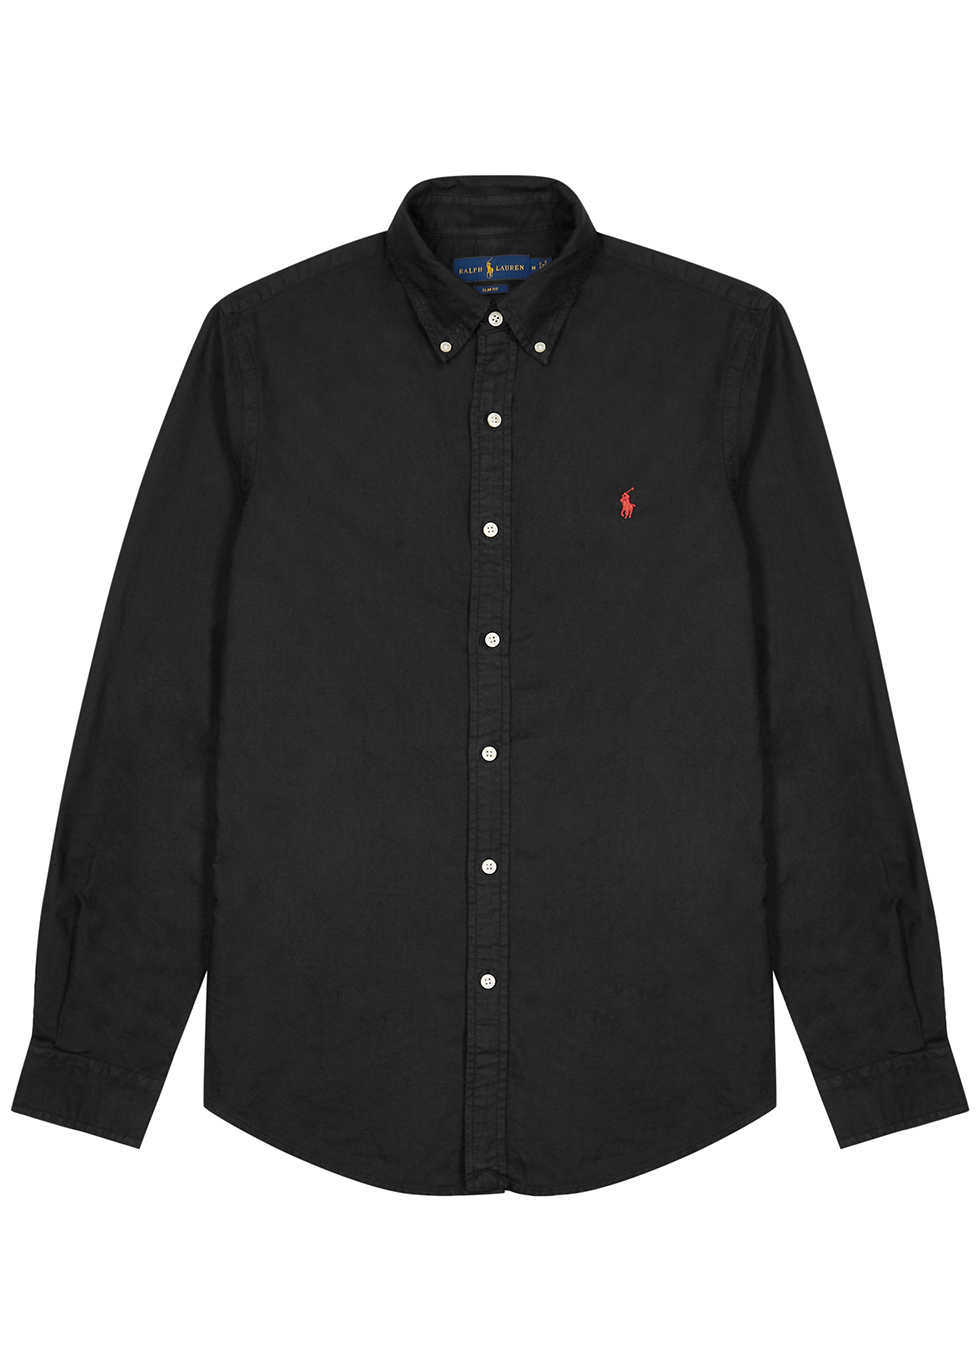 Black cotton Oxford shirt